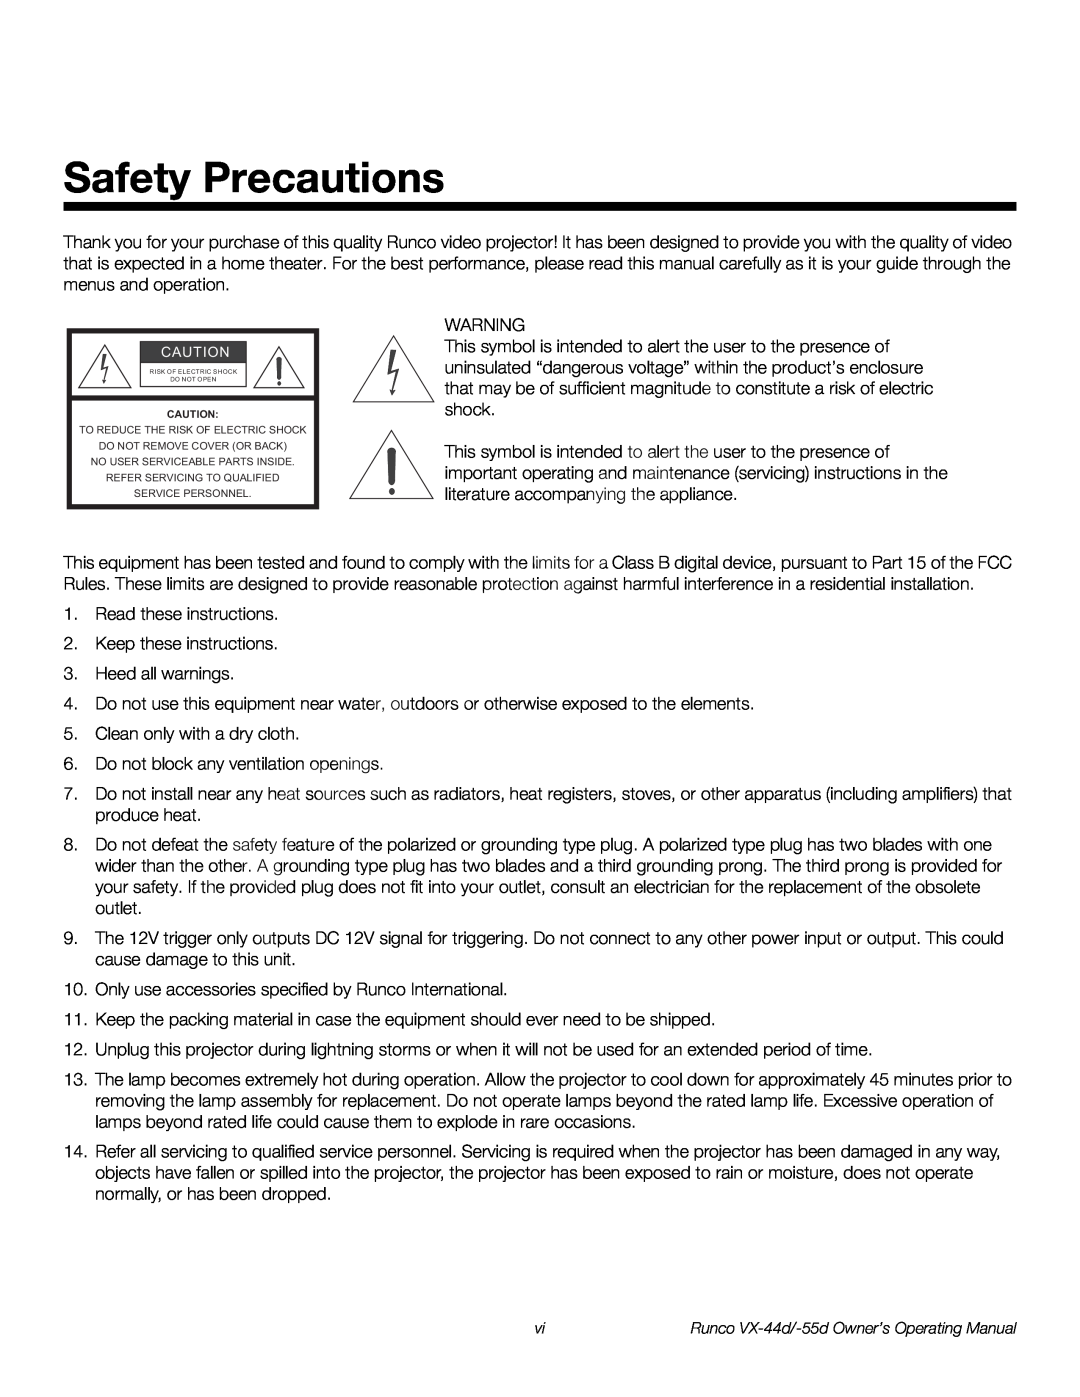 Runco VX-44D, VX-55D manual Safety Precautions 